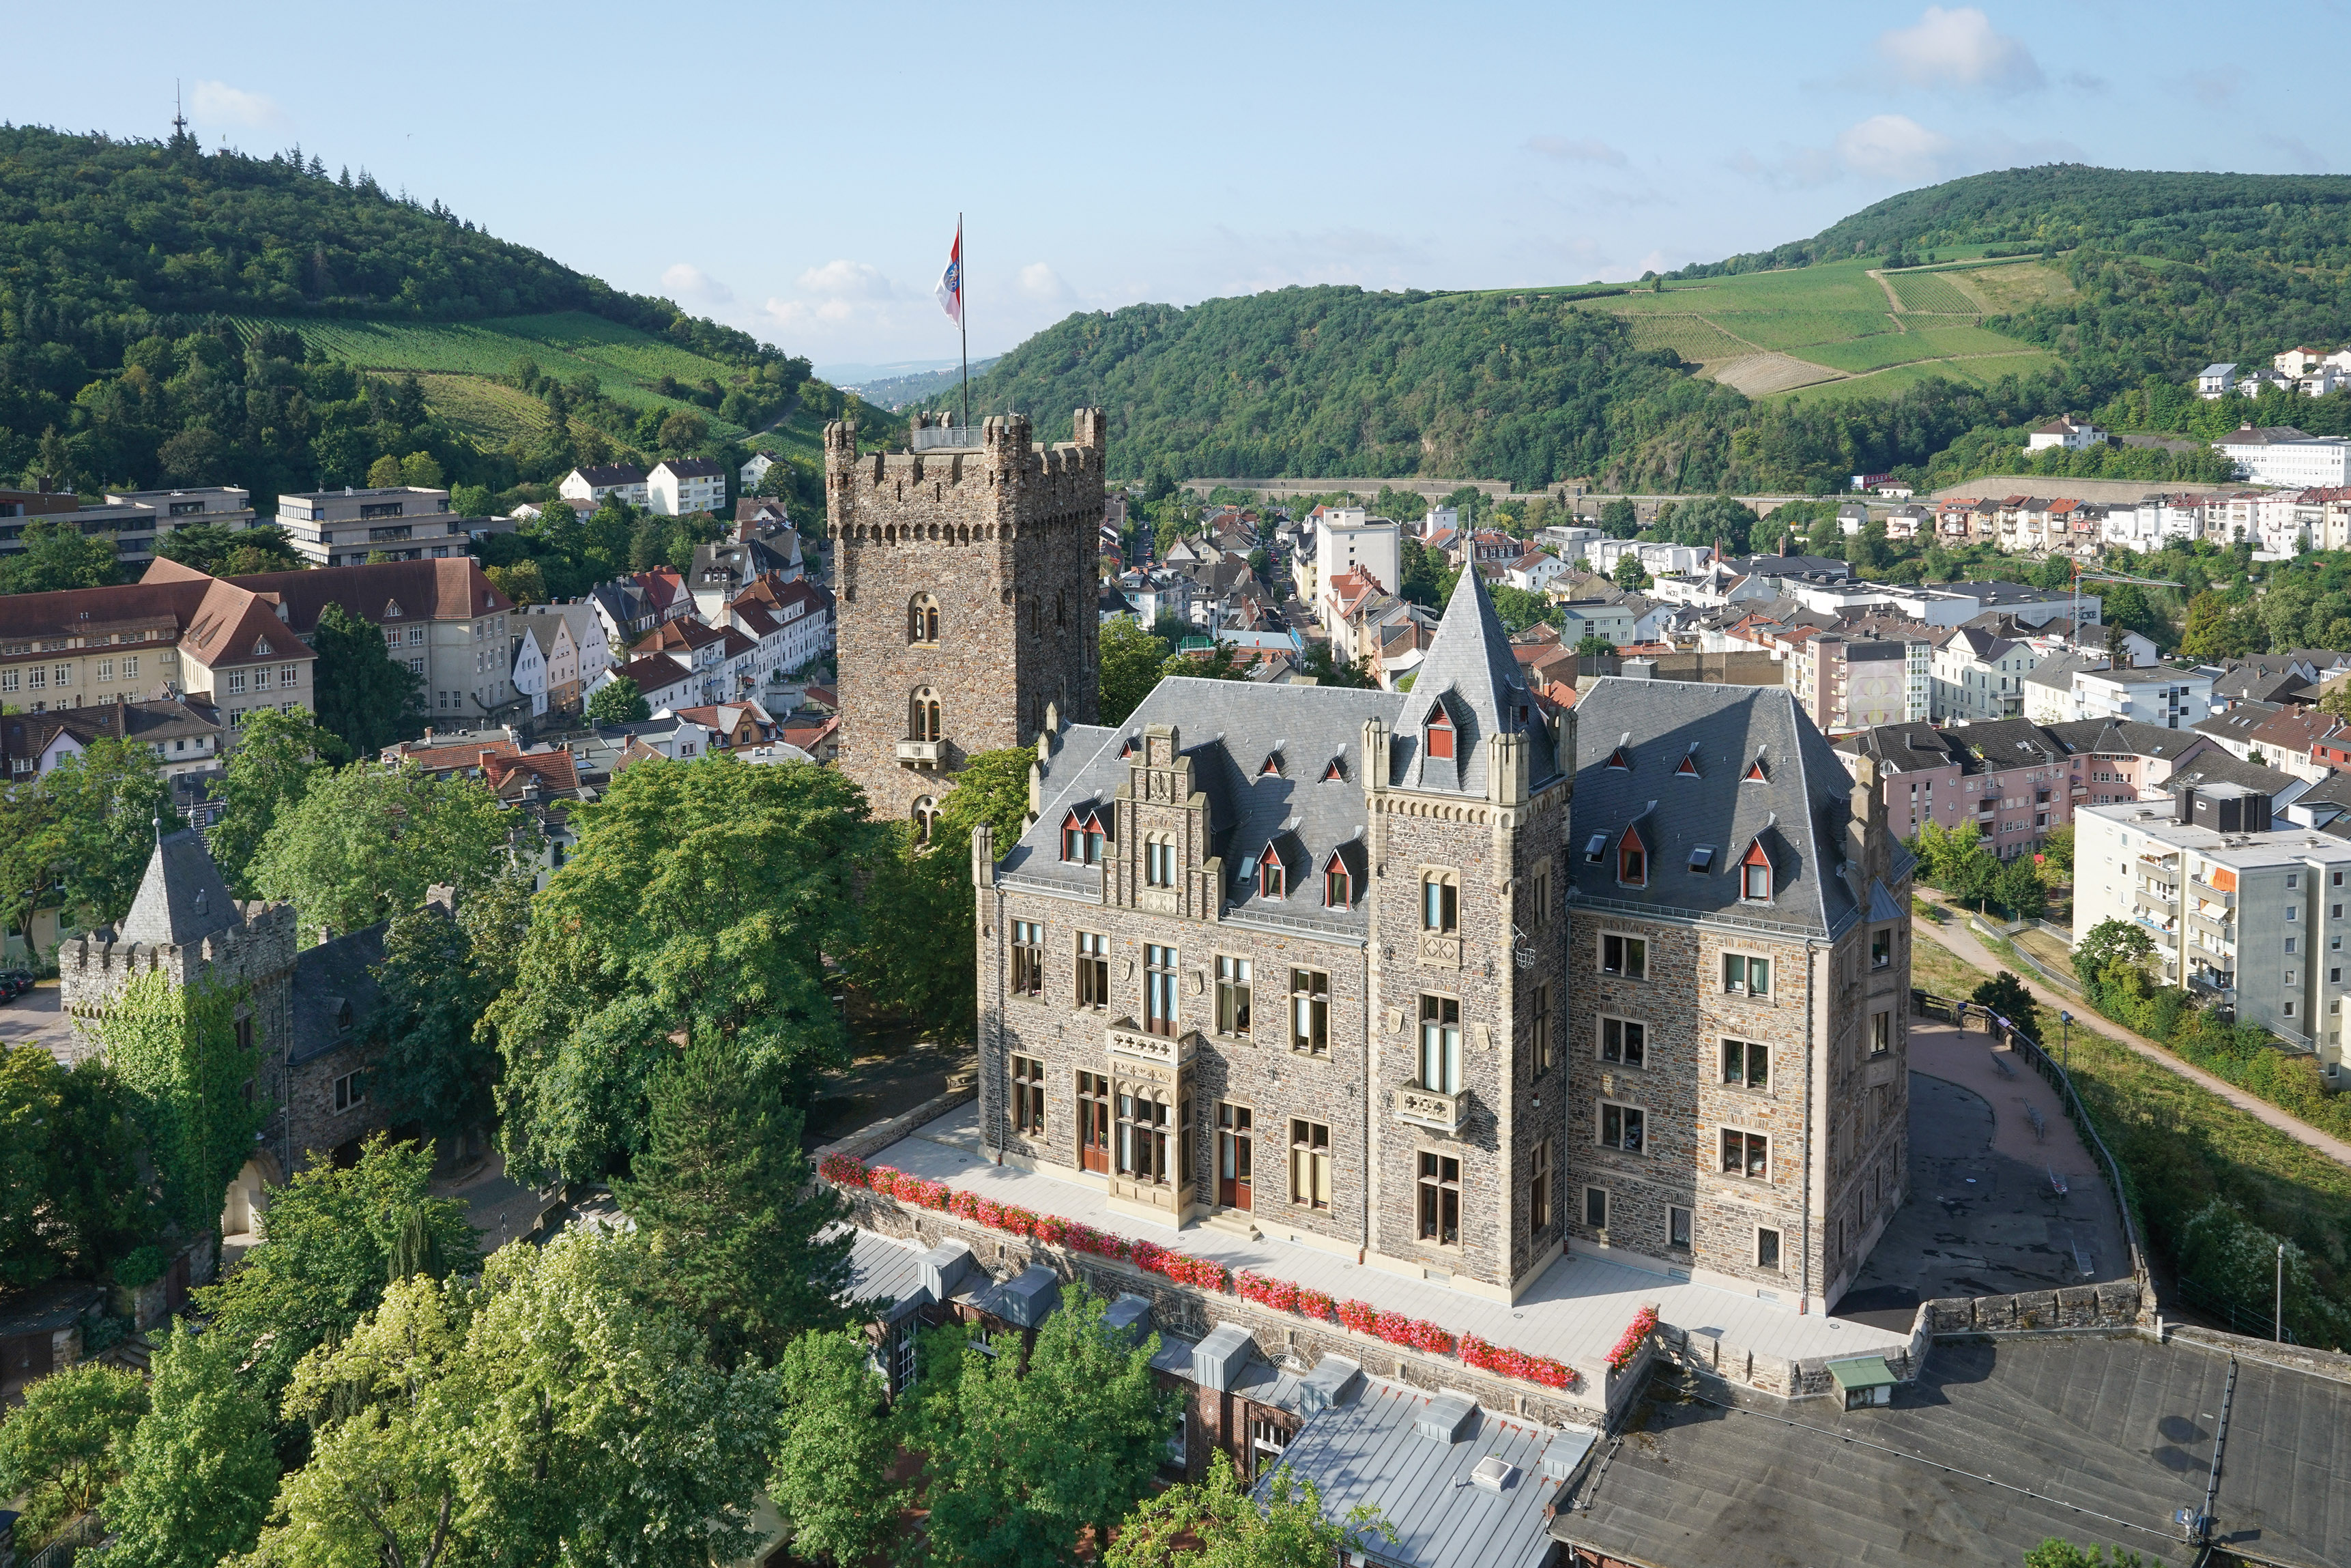 Die Burg Klopp in Bingen am Rhein gilt als Wahrzeichen der Stadt und beherbergt unter anderem das Büro des Bürgermeisters sowie einen Teil der Stadtverwaltung.